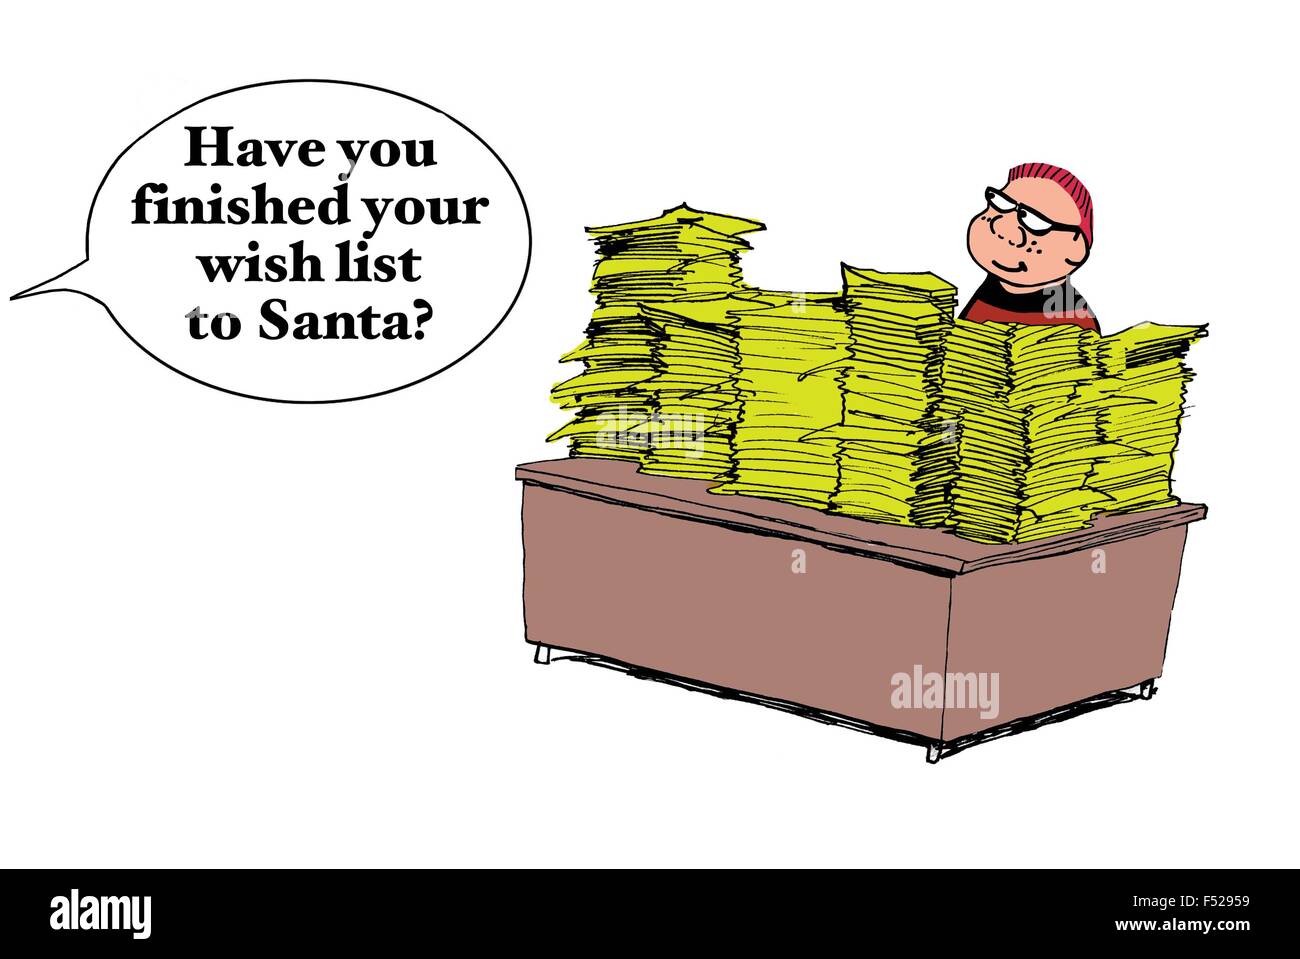 Weihnachten Cartoon Boy am Schreibtisch mit vielen Papieren. Mutter fragt: "haben Sie Ihren Wunschzettel an den Weihnachtsmann fertig?". Stockfoto